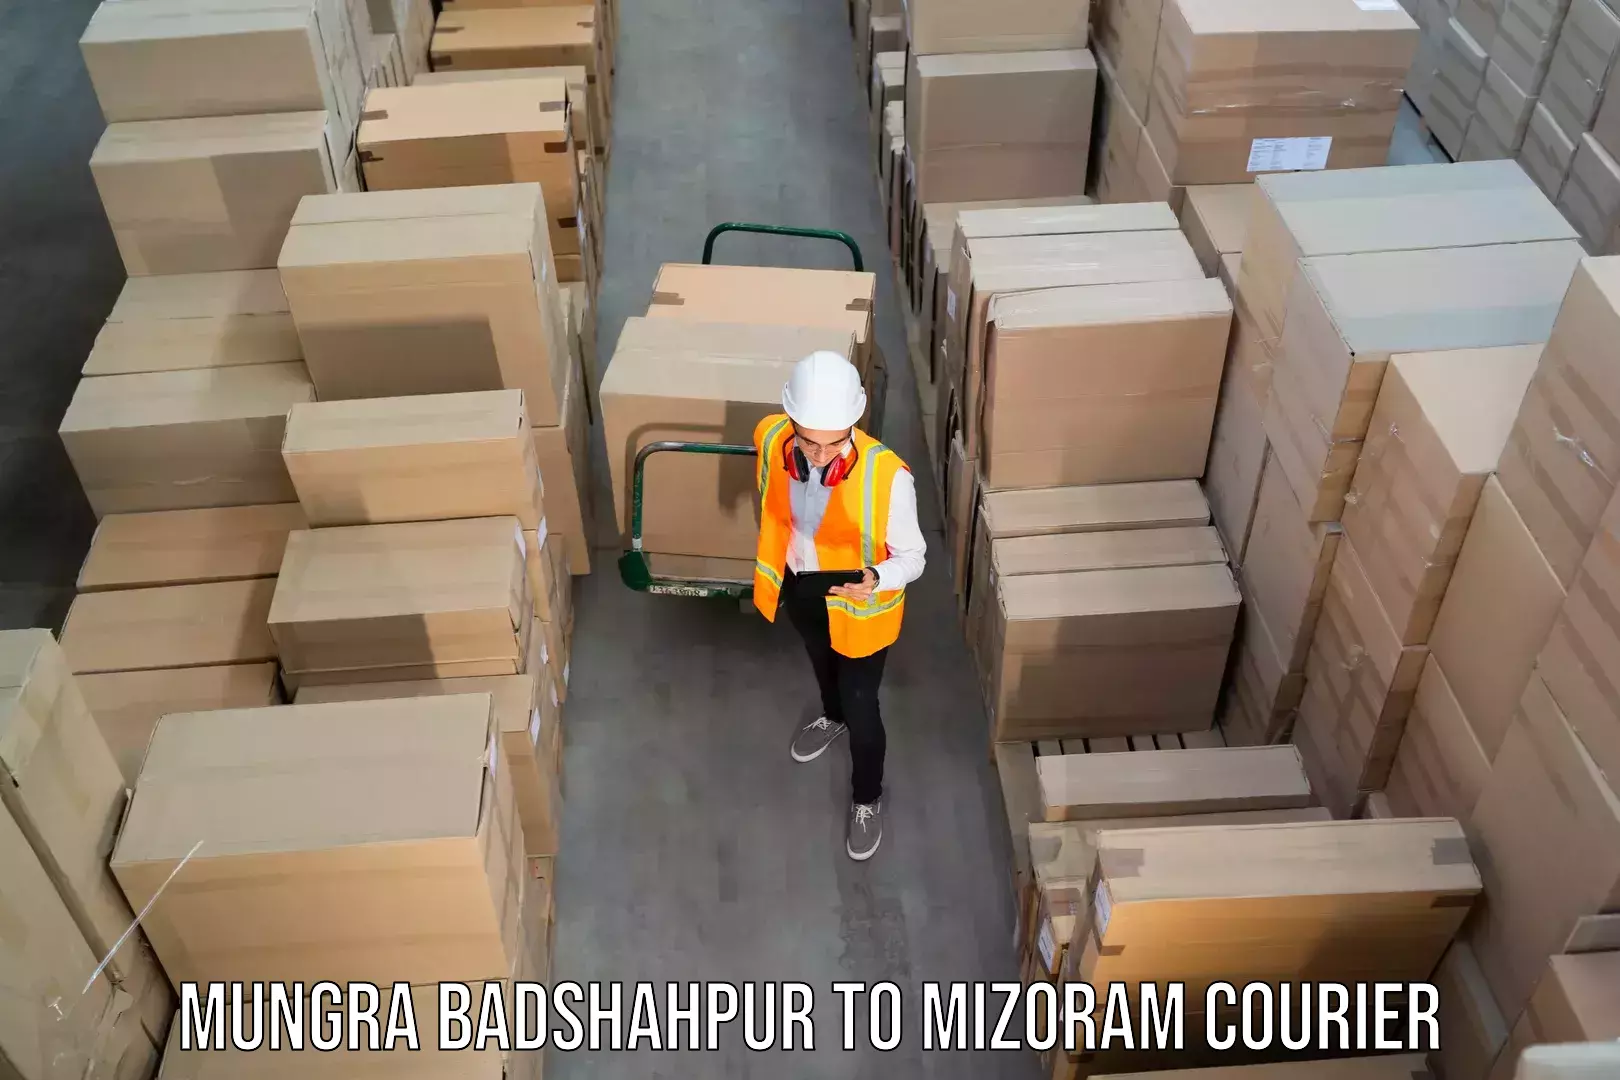 Pharmaceutical courier Mungra Badshahpur to Siaha